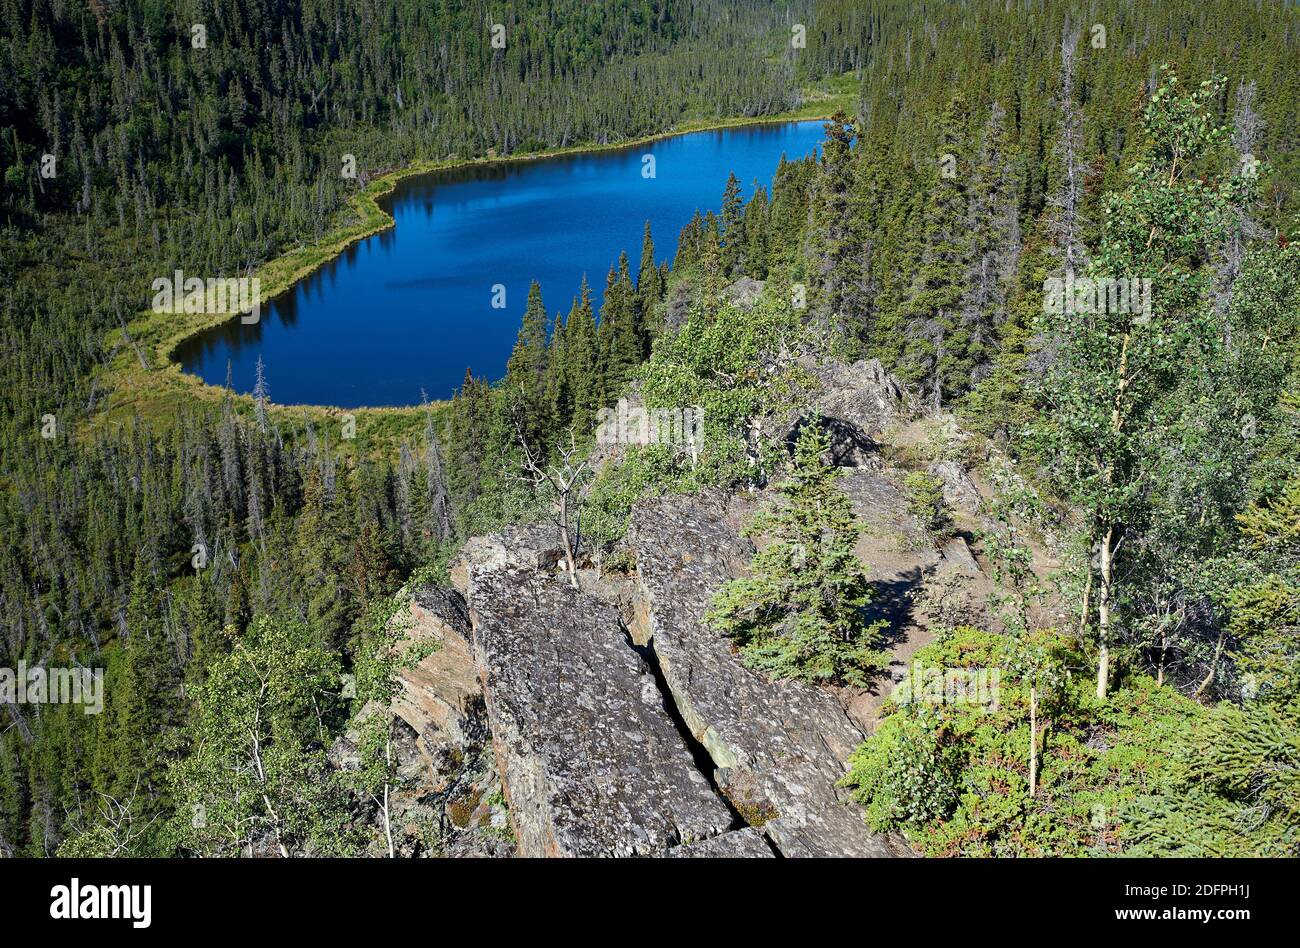 Vista desde la libertad cae camino a un nombre de lago sin nombre, que se encuentra entre árboles de picea en un valle estrecho Foto de stock